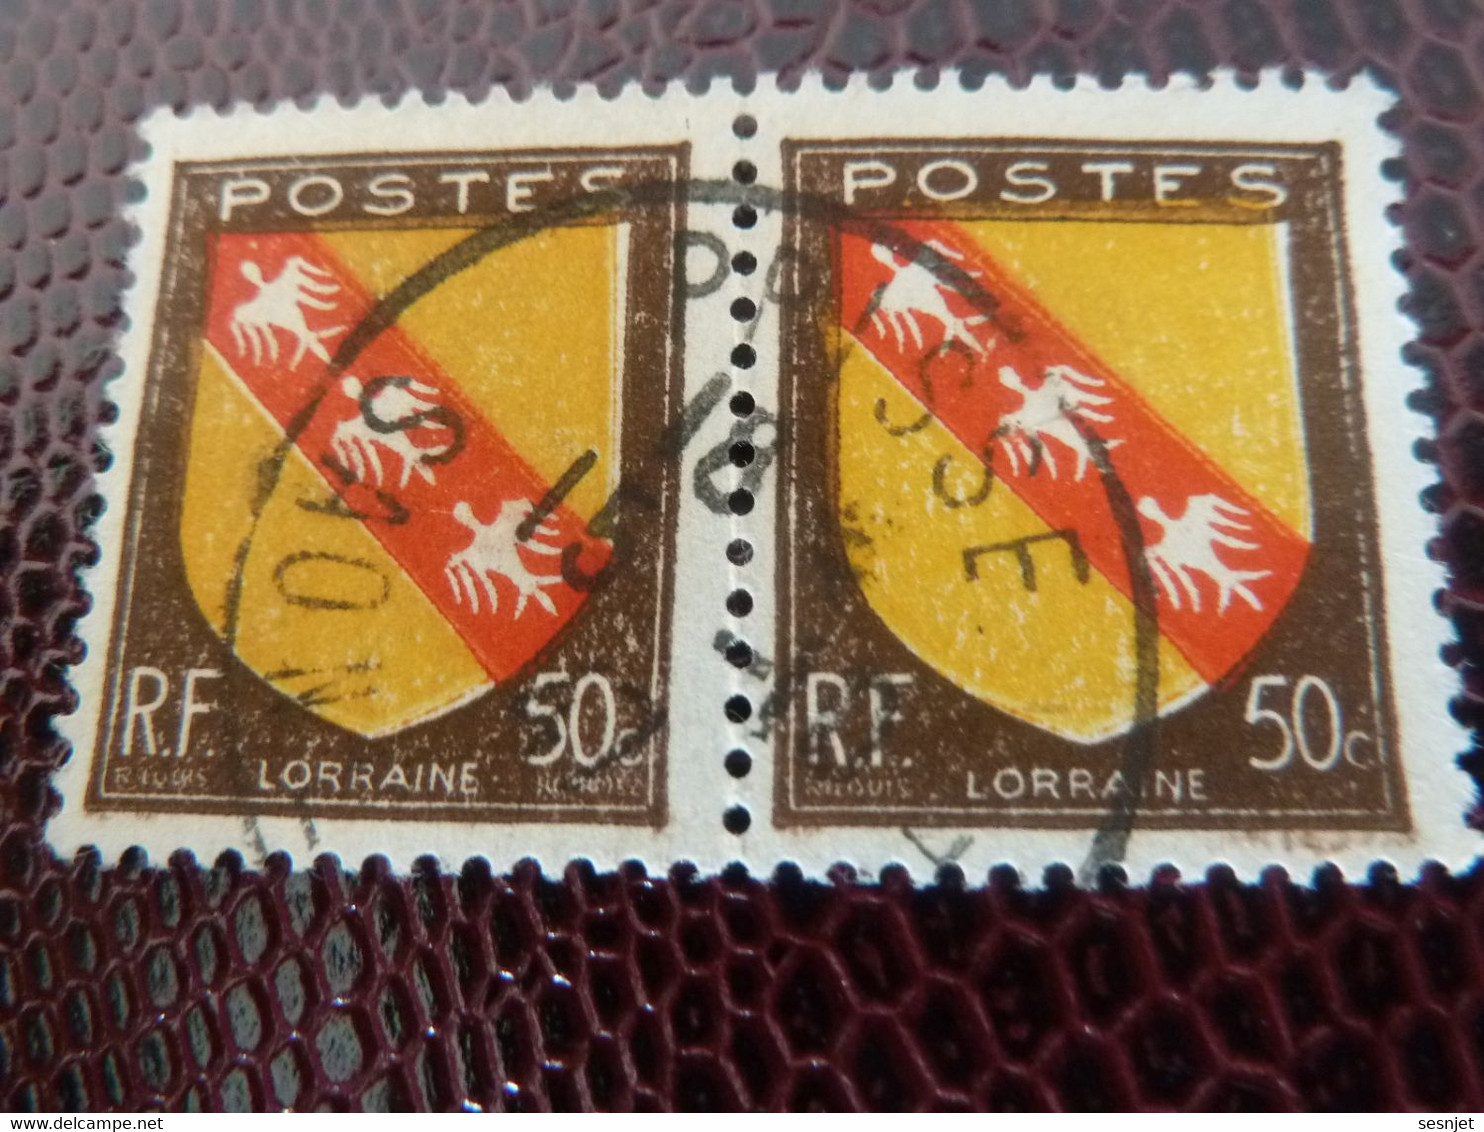 ARMOIRIE - Lorraine - 50c. - Brun, Jaune Et Rouge - Double Oblitérés - Année 1946 - - Usados